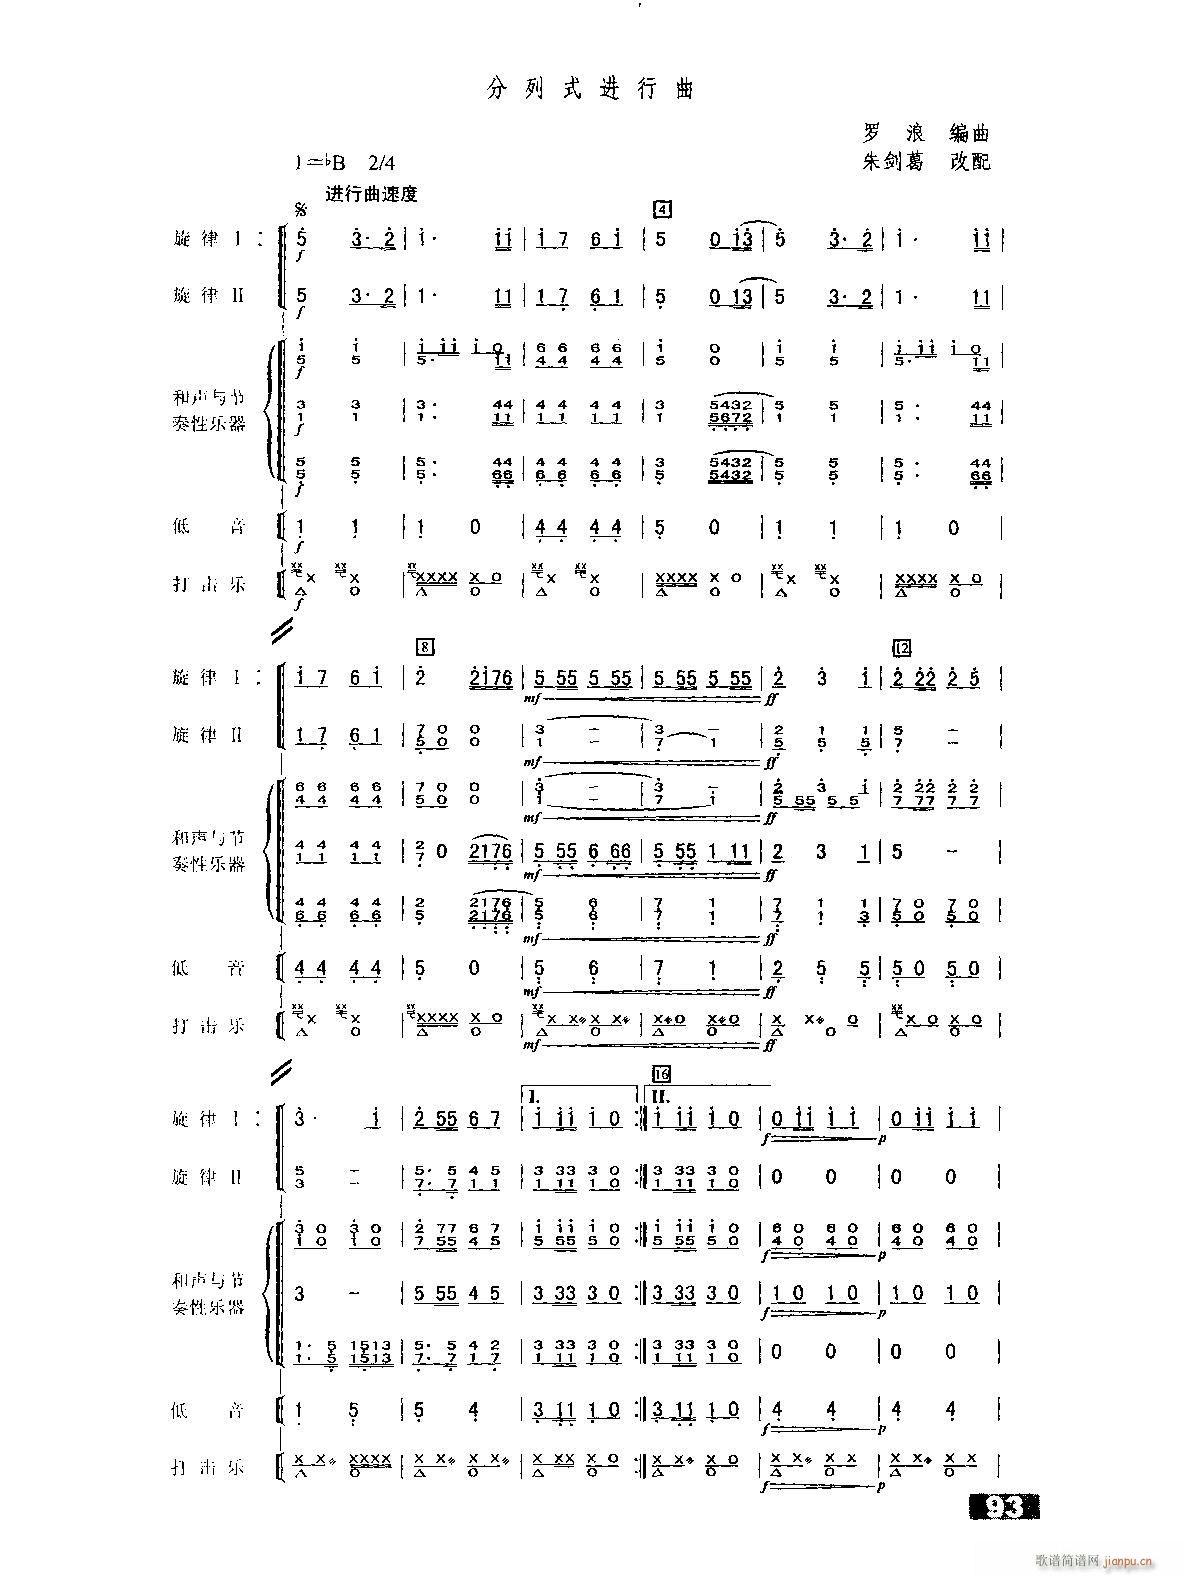 分列式进行曲 管乐合奏缩编(总谱)1